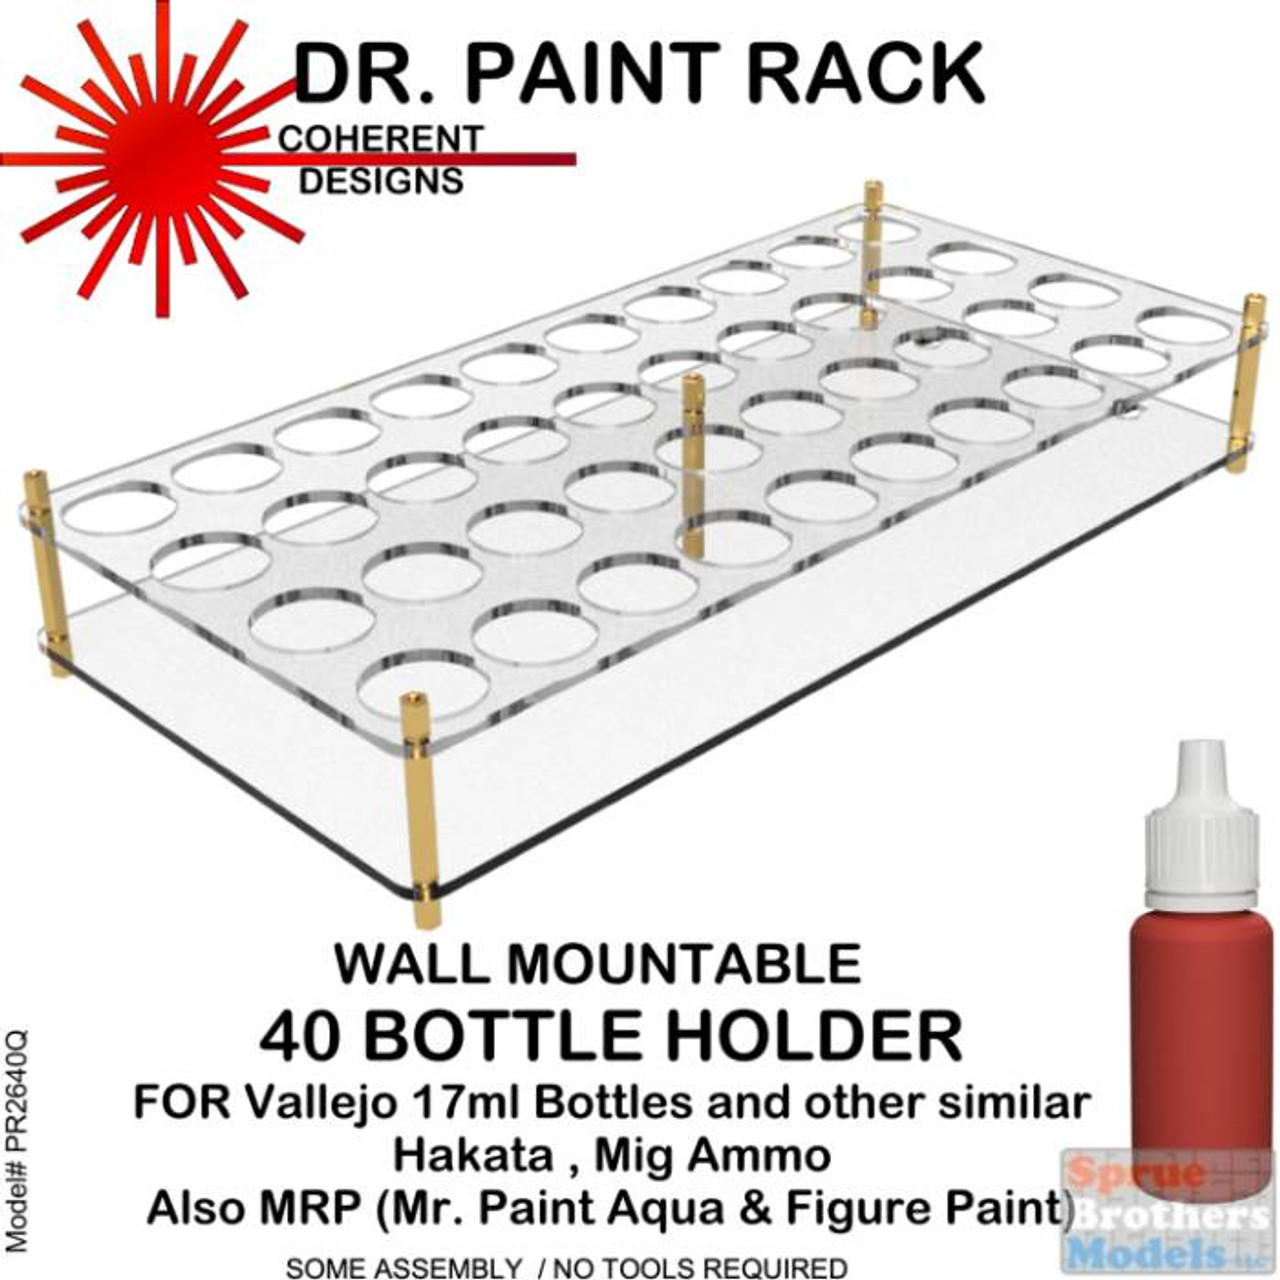 COH1007 Dr Paint Rack - Wall Mountable 40 Bottle Holder (for